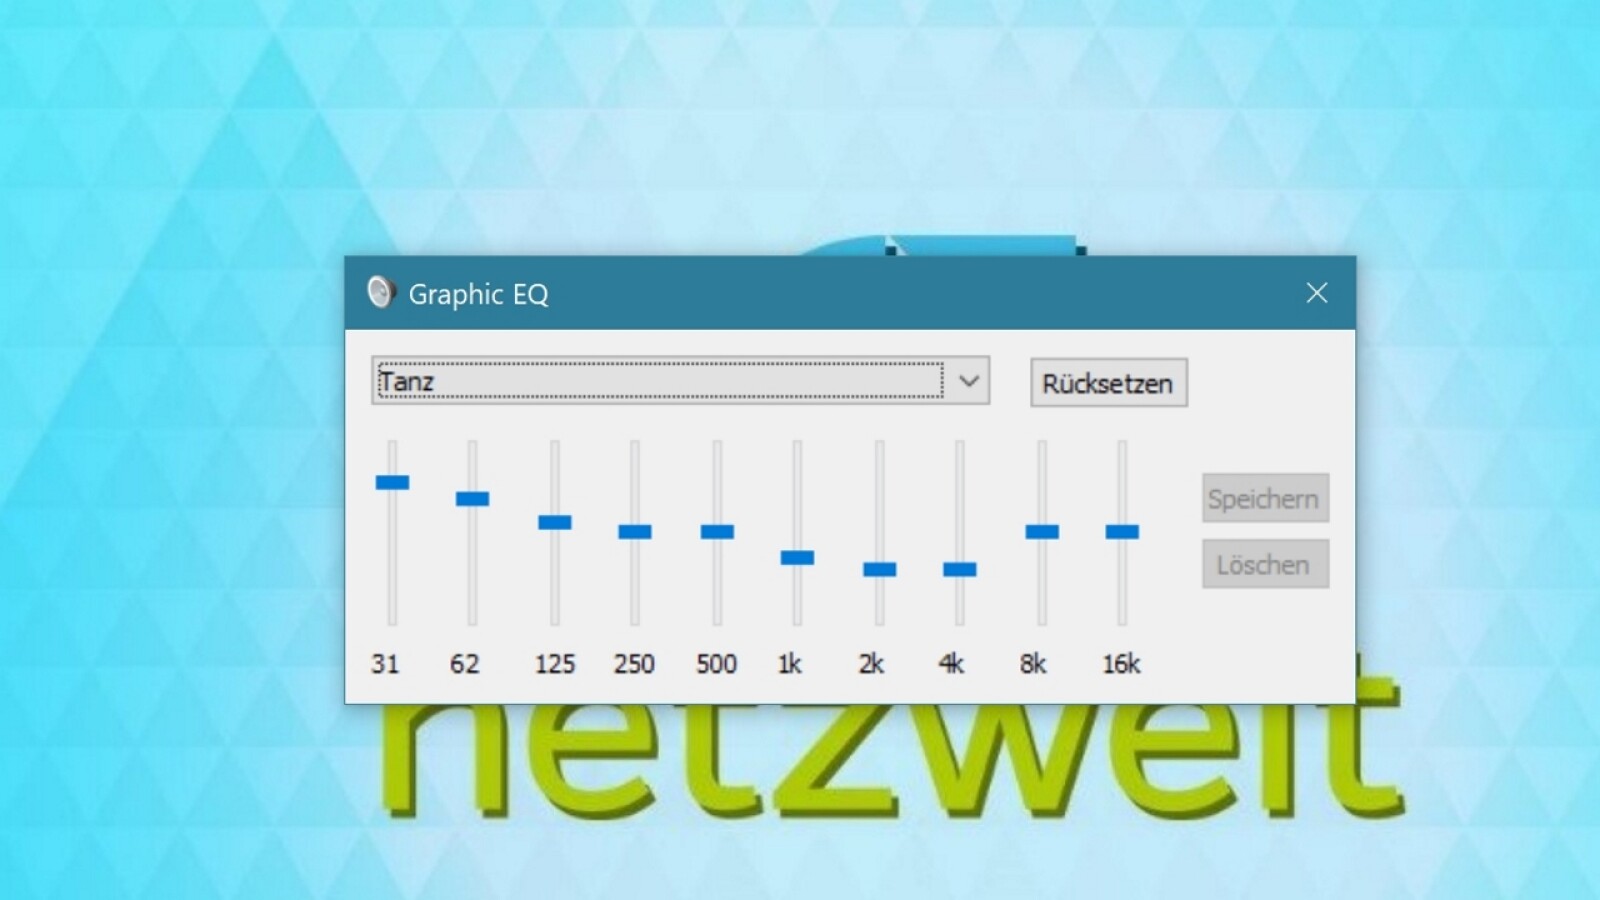 Maestro Stillehavsøer At understrege Windows 10: So stellt ihr den Equalizer an und verbessert den Klang |  NETZWELT